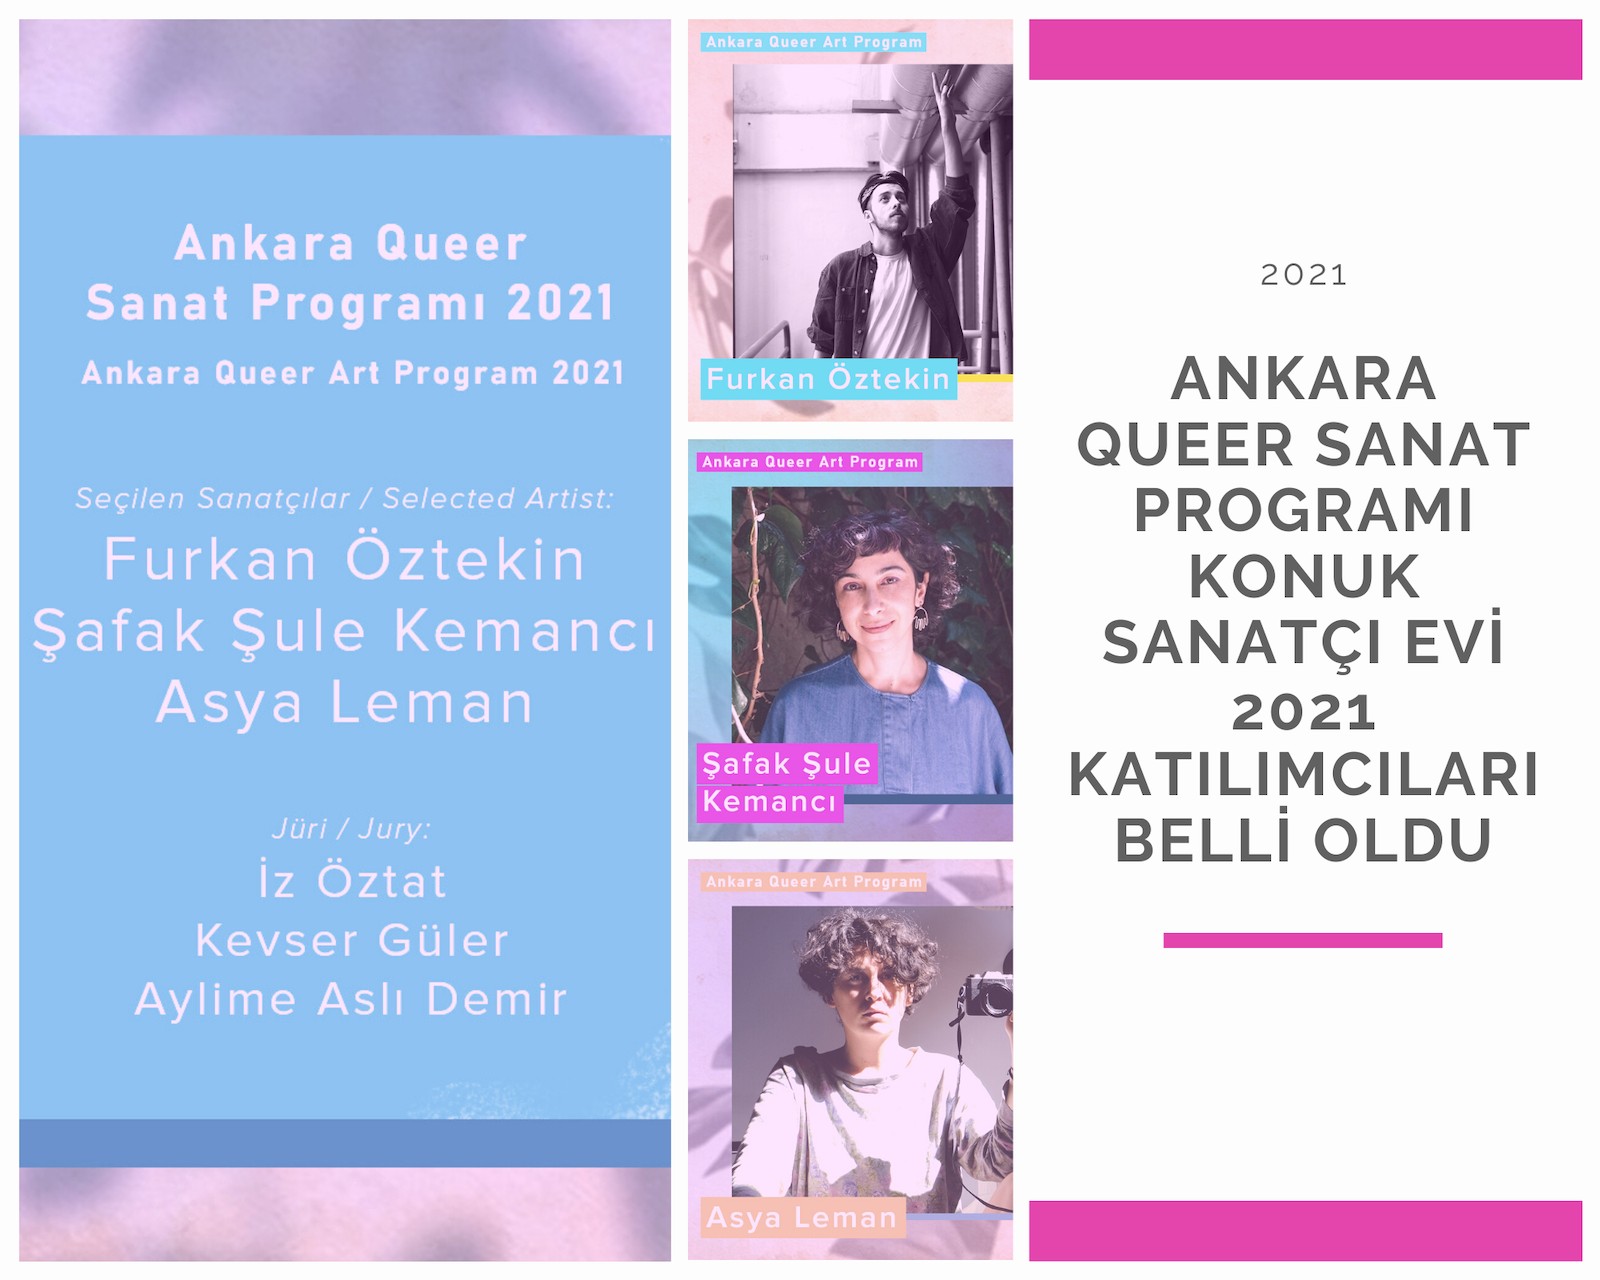 Ankara Queer Sanat Programı Konuk Sanatçı Evi 2021 katılımcıları belli oldu Kaos GL - LGBTİ+ Haber Portalı